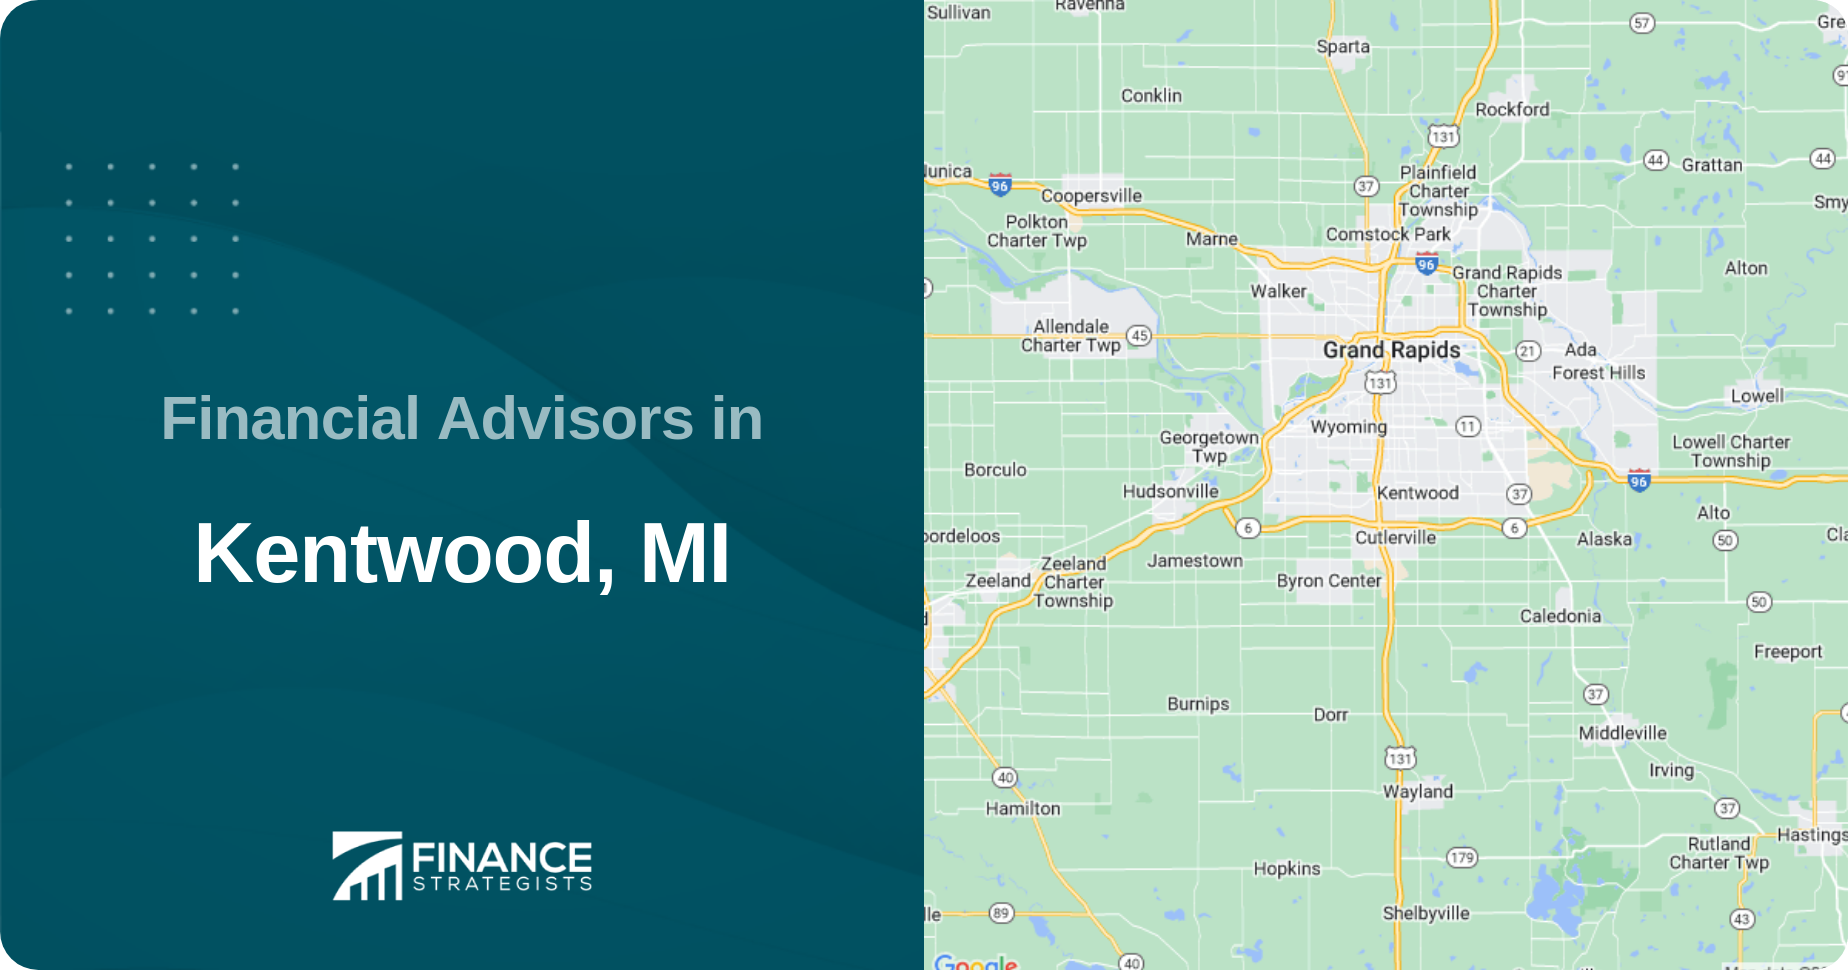 Financial Advisors in Kentwood, MI